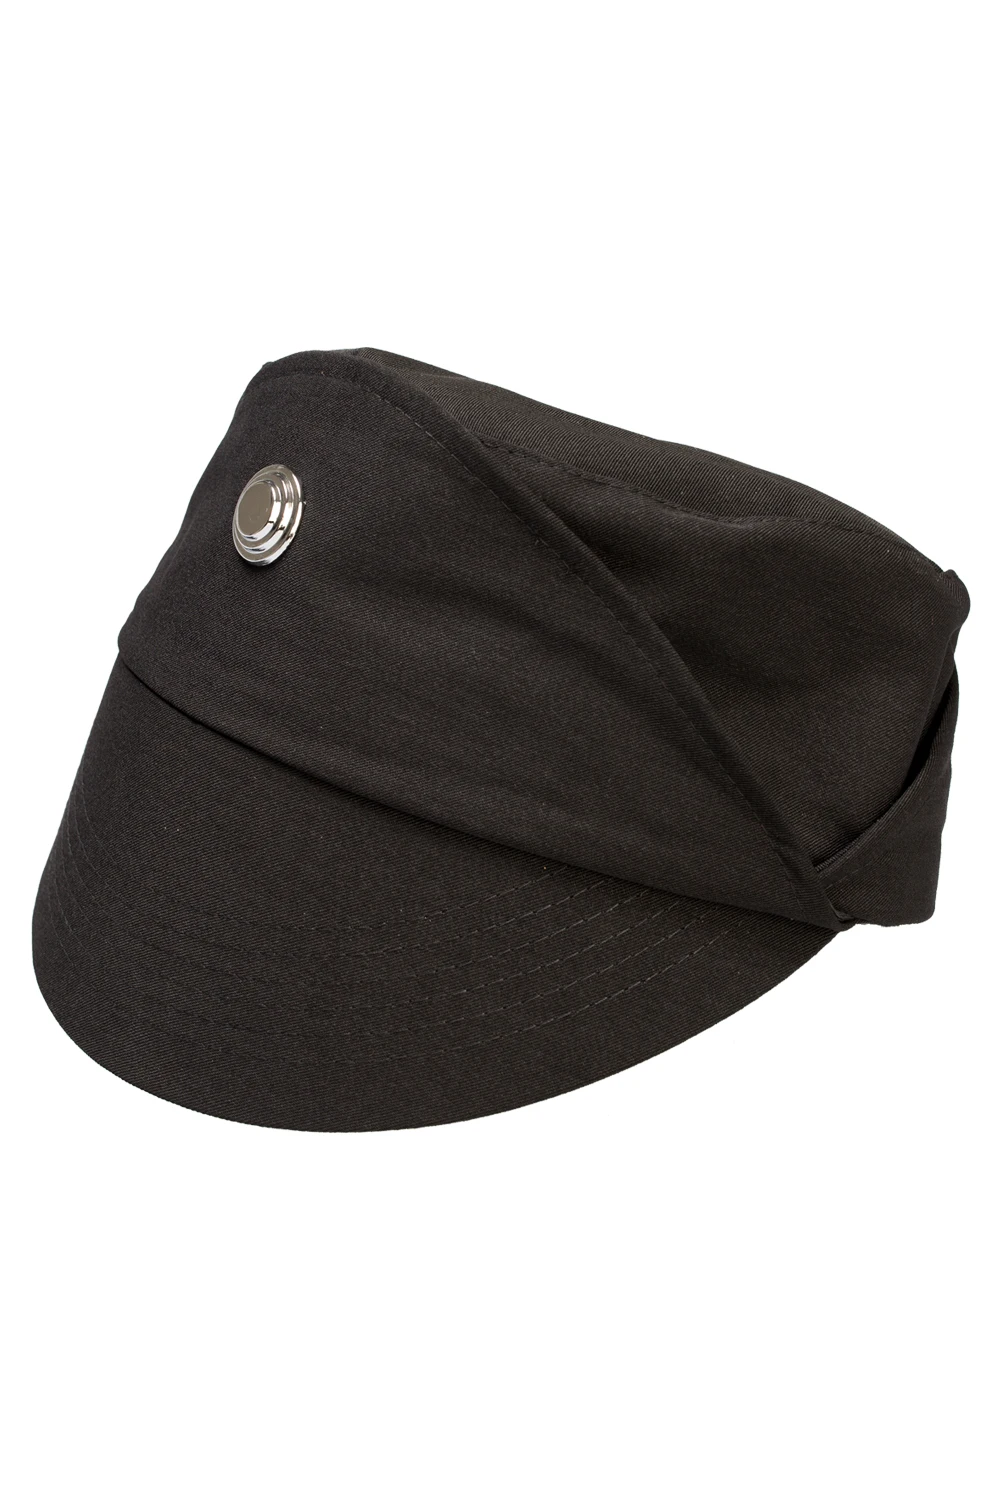 Прямая поставка хлопковая шапка в стиле Звездных Войн для косплея шляпа черная